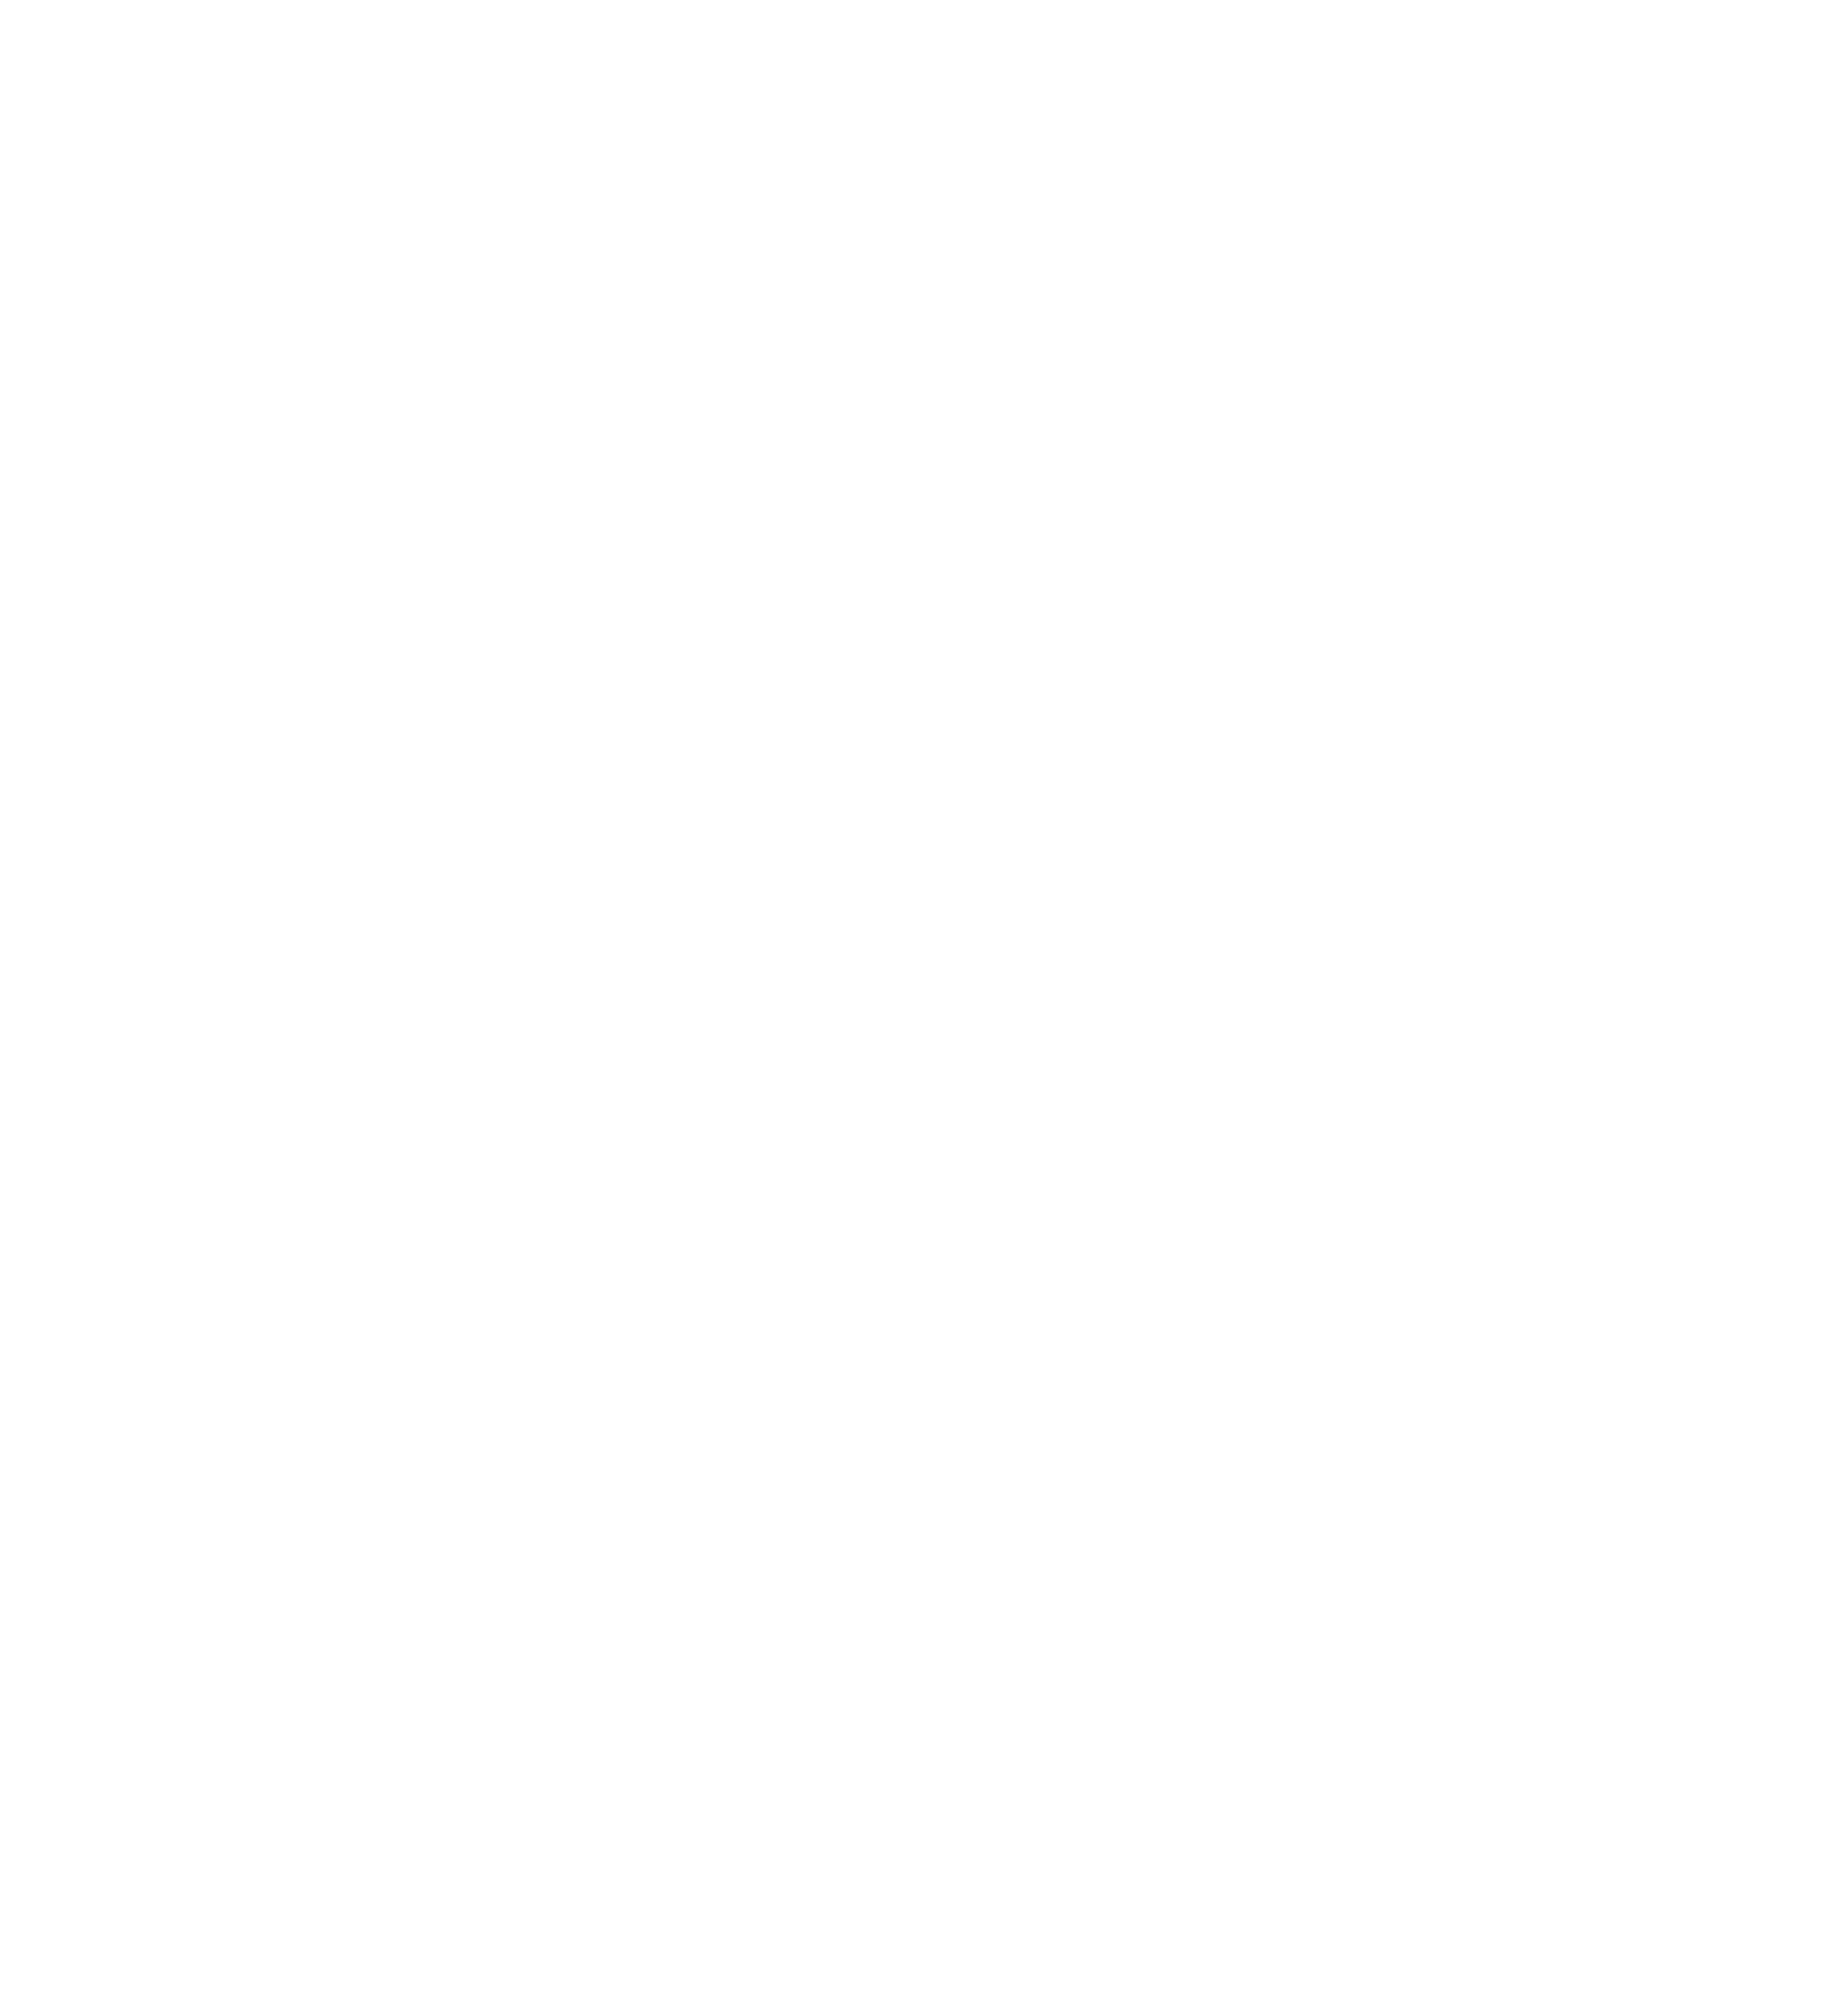 BXR Retreat white